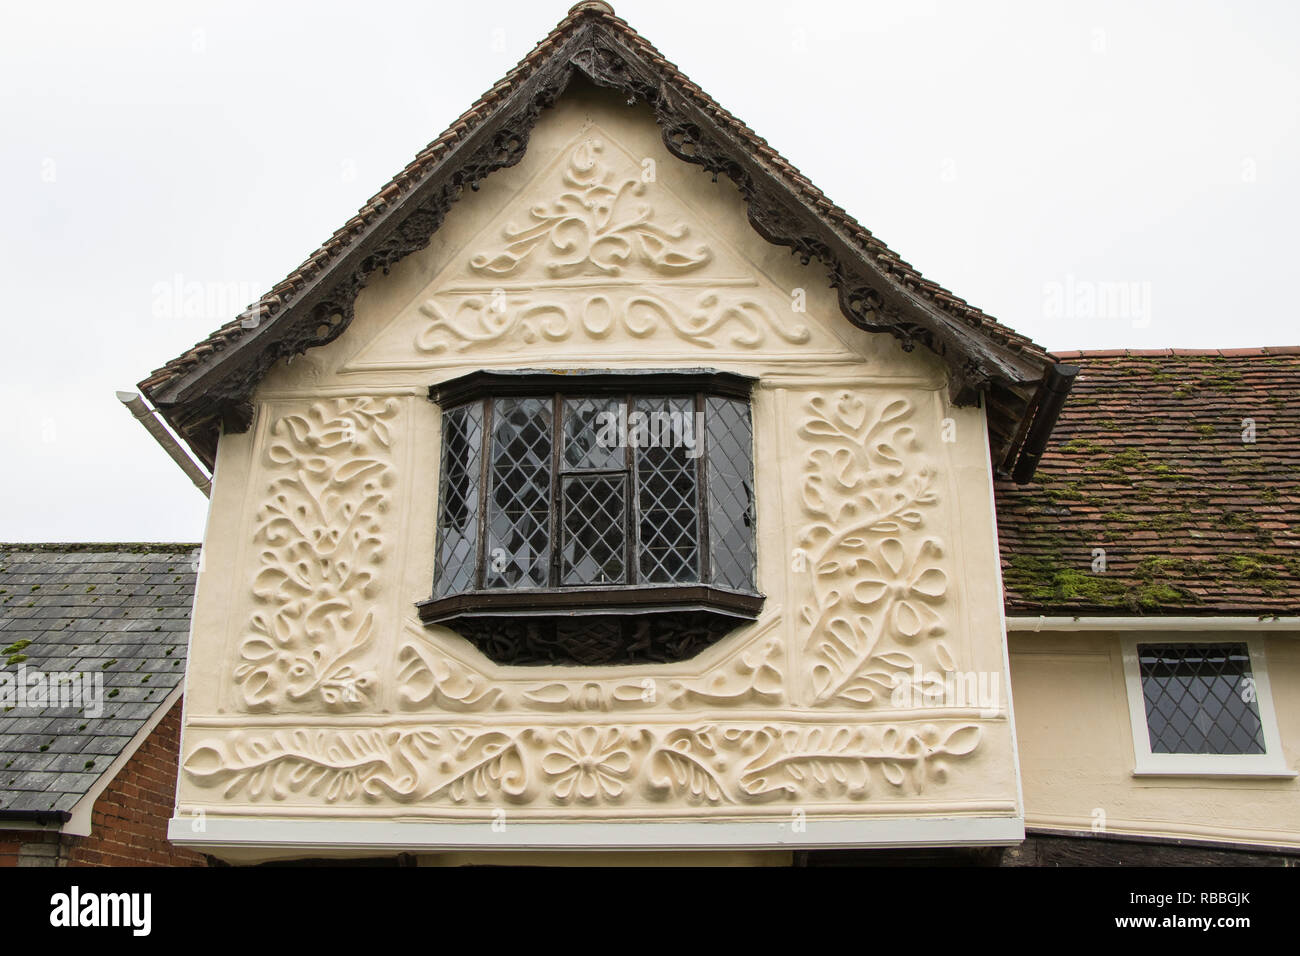 Pargeting - ein Beispiel für dieses dekorative oder Abdichtung verputzen zu Gebäudewänden angewendet. Dieses Beispiel kann in Clare, Suffolk gefunden werden Stockfoto